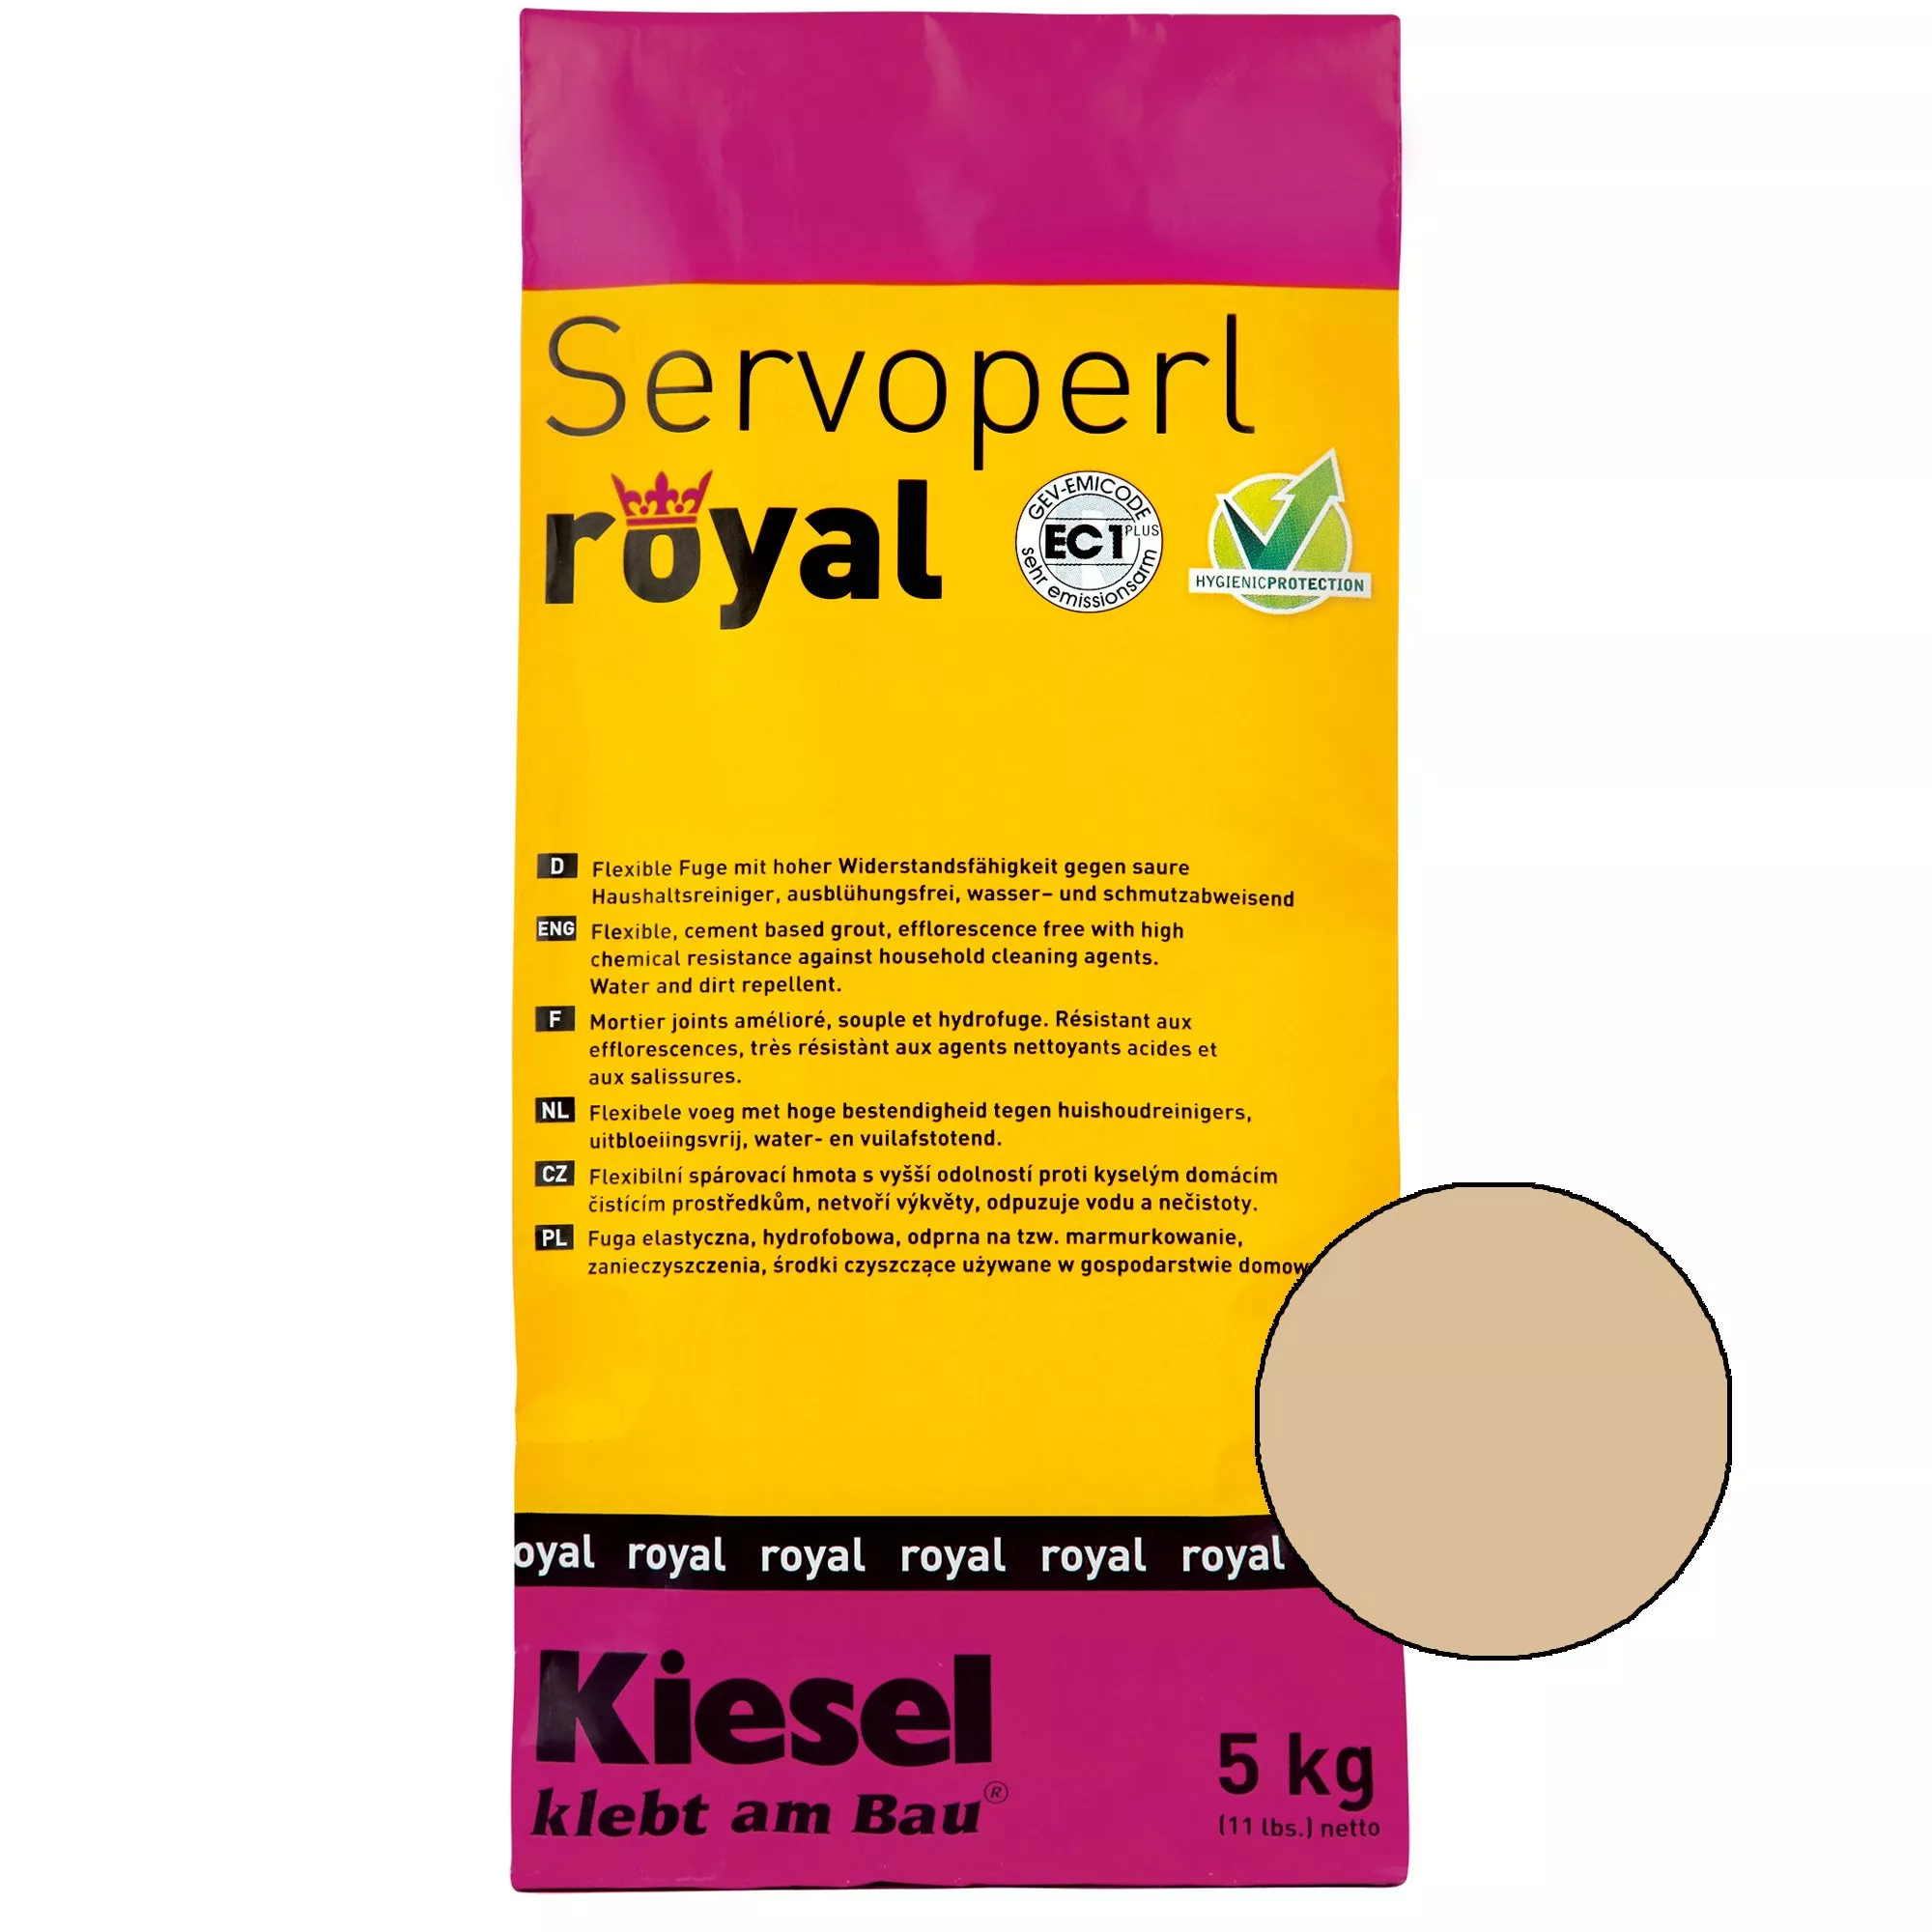 Kiesel Servoperl royal - смес за фуги - 5 кг Safari Sand